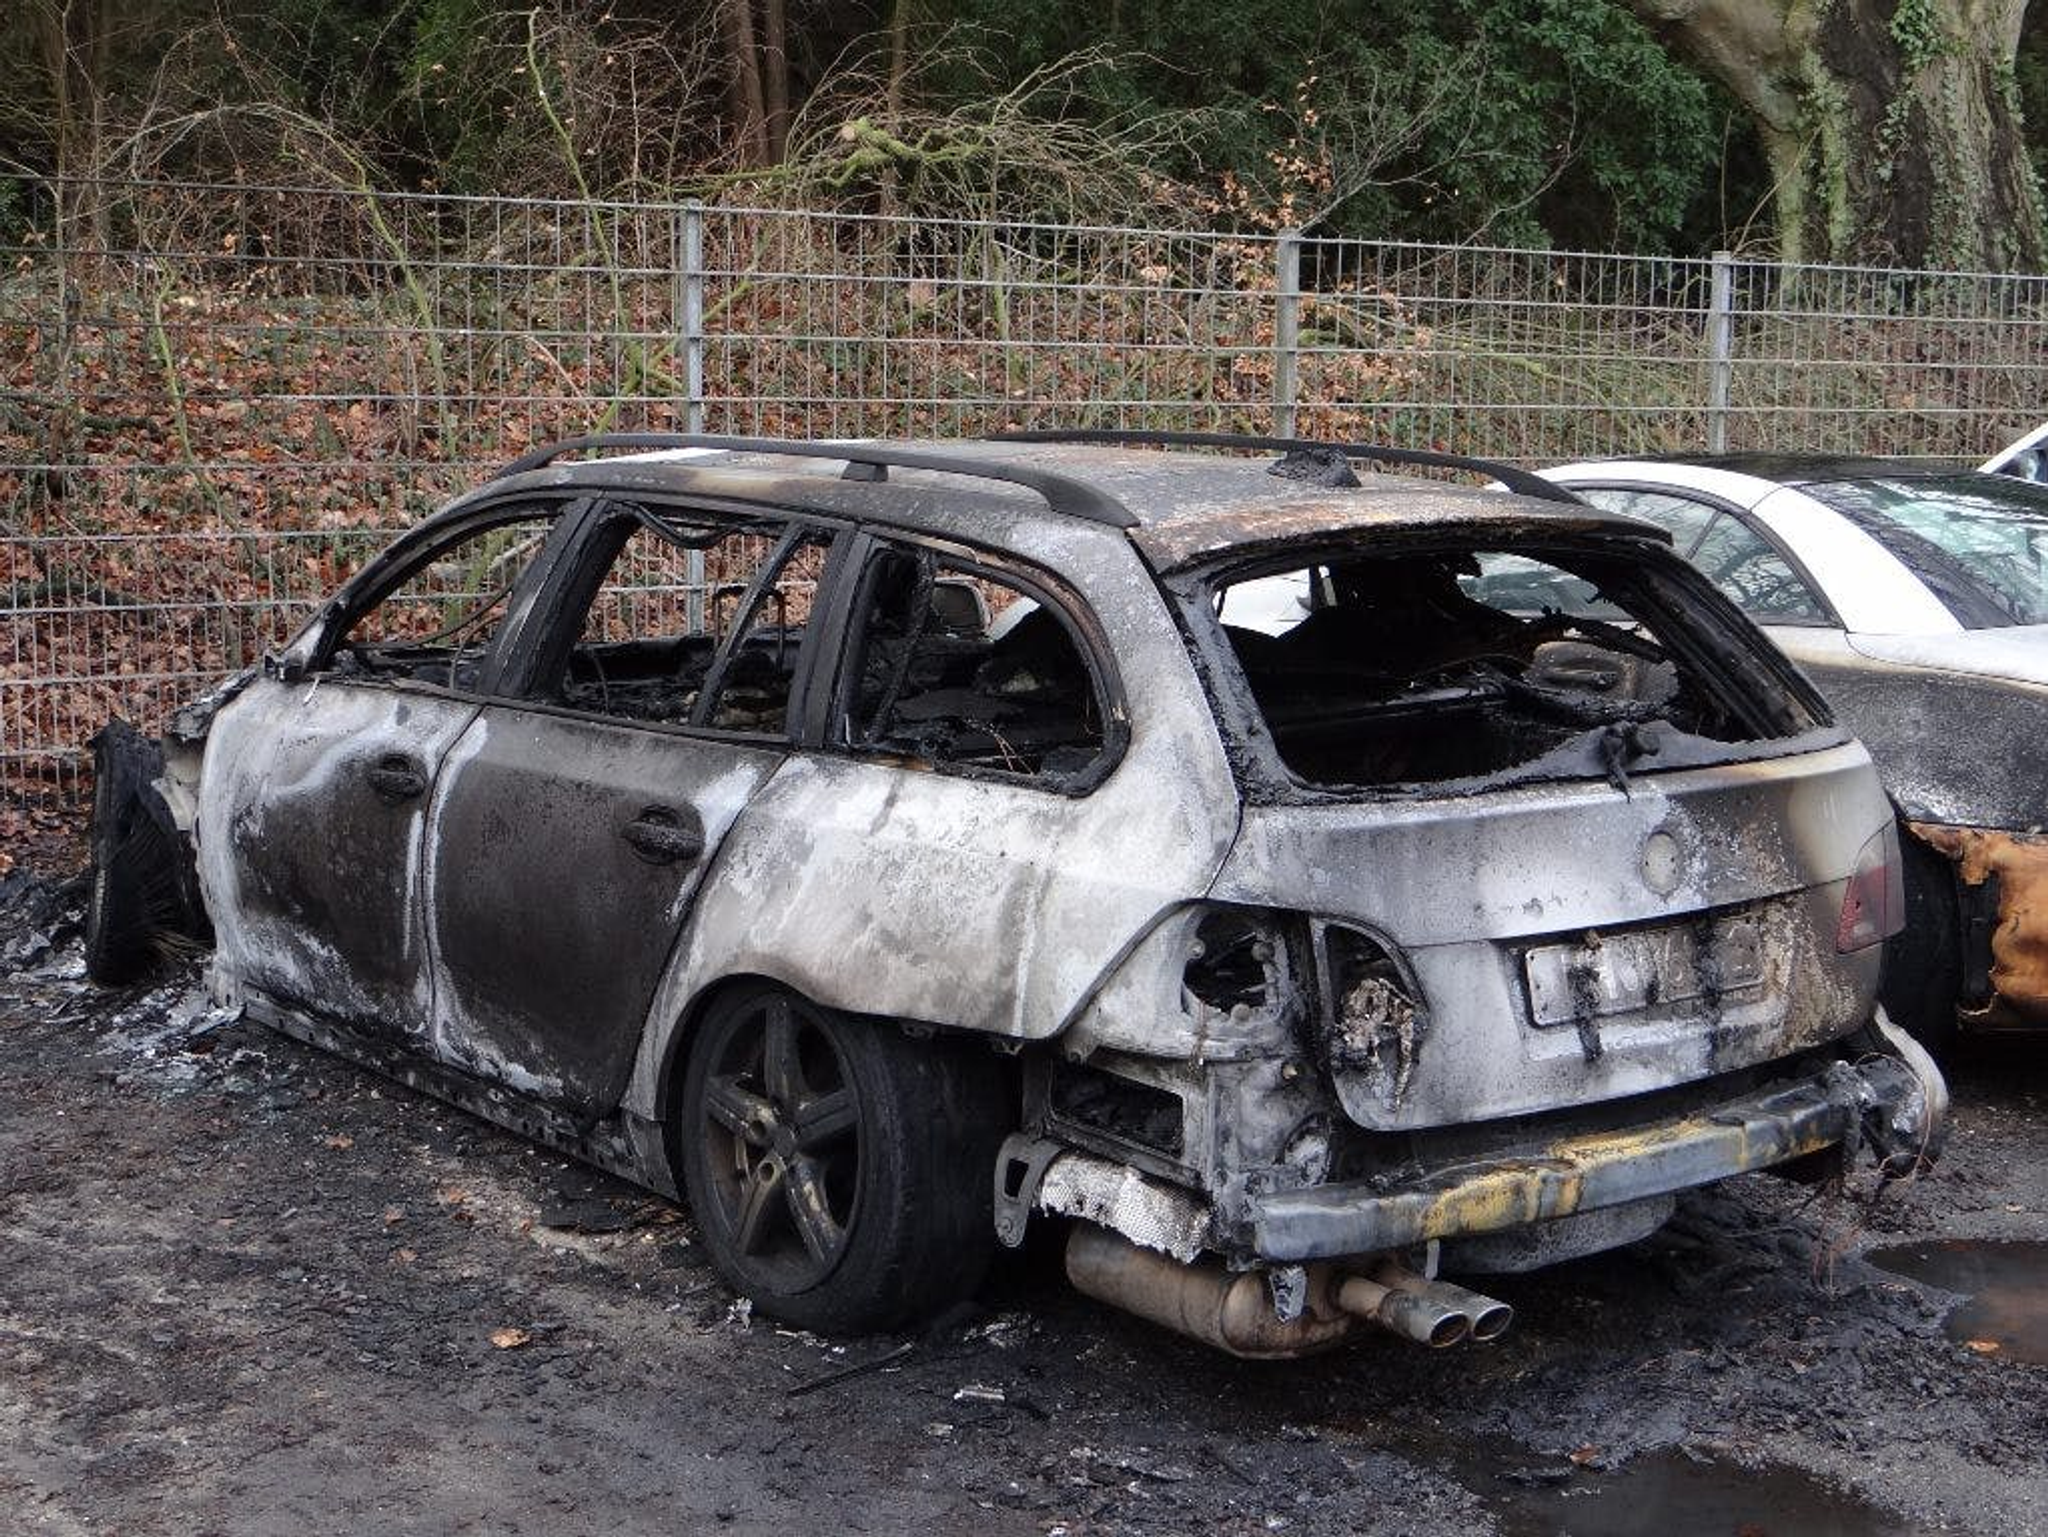 згоріла машина, пошкоджена машина, транспортний засіб після пожежі, згоріла машина